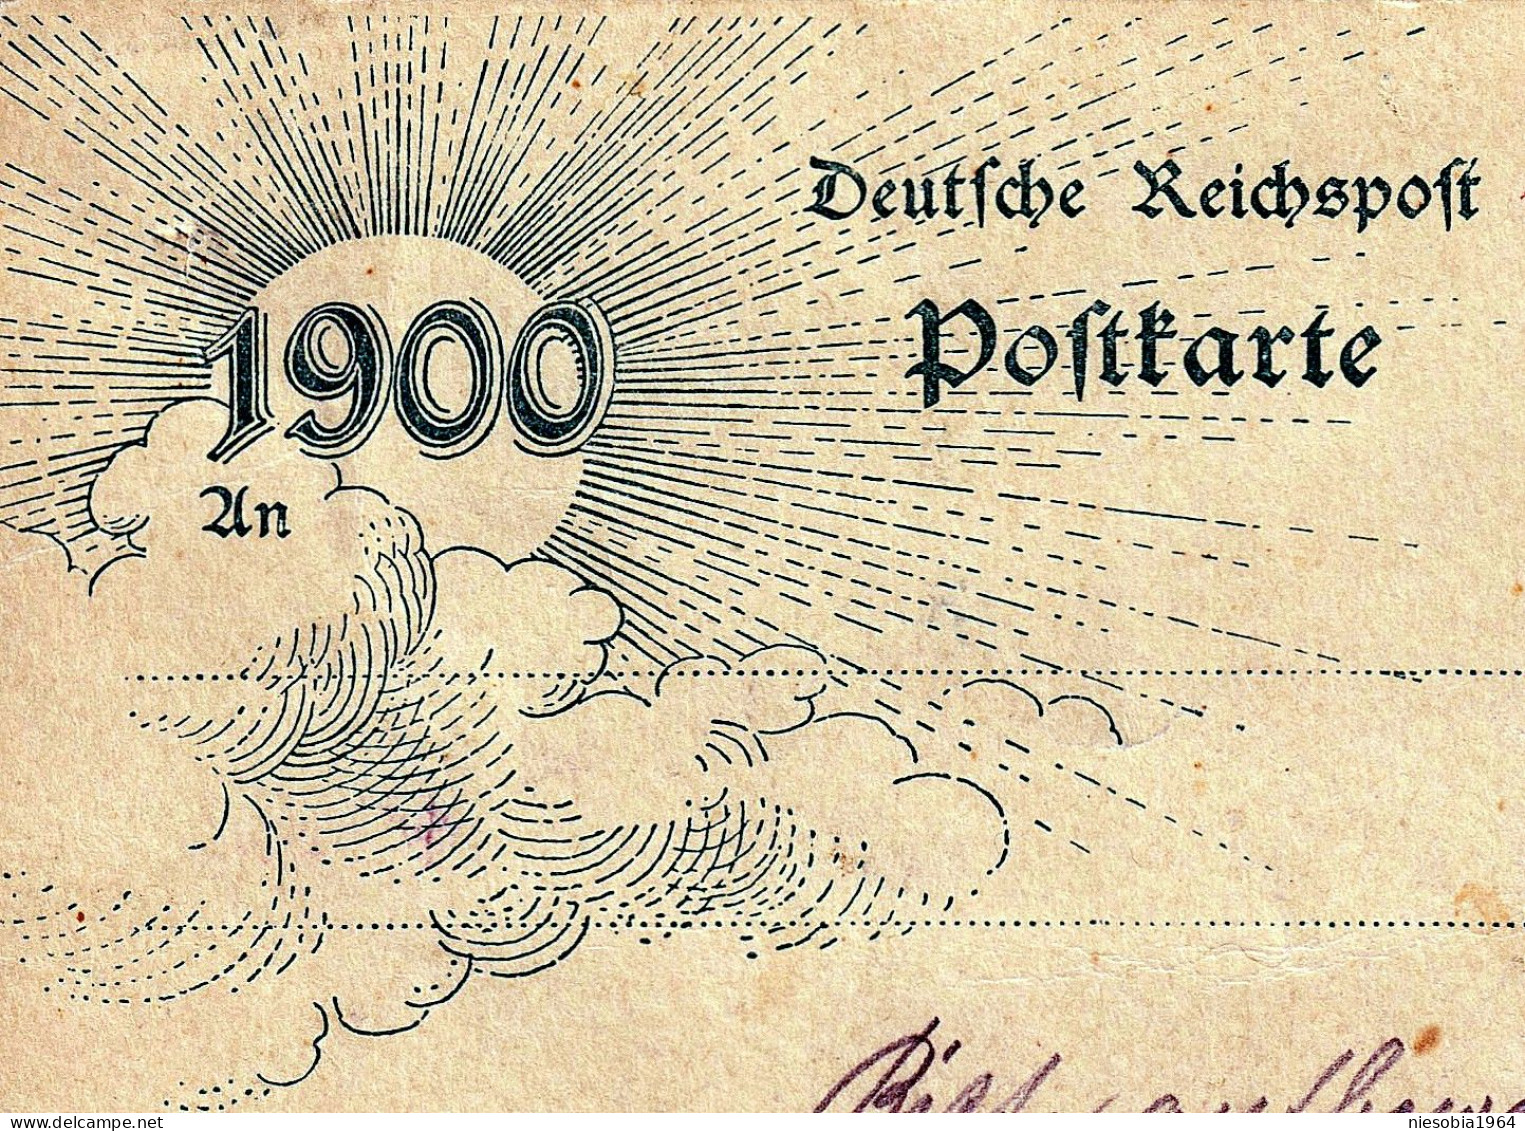 Imperial Germany 5 Pfennig Postcard "End Of XIX C.1900" Jahrhundertwende, Deutsche Reichspost Postkarte. Gedruckte Marke - Tarjetas